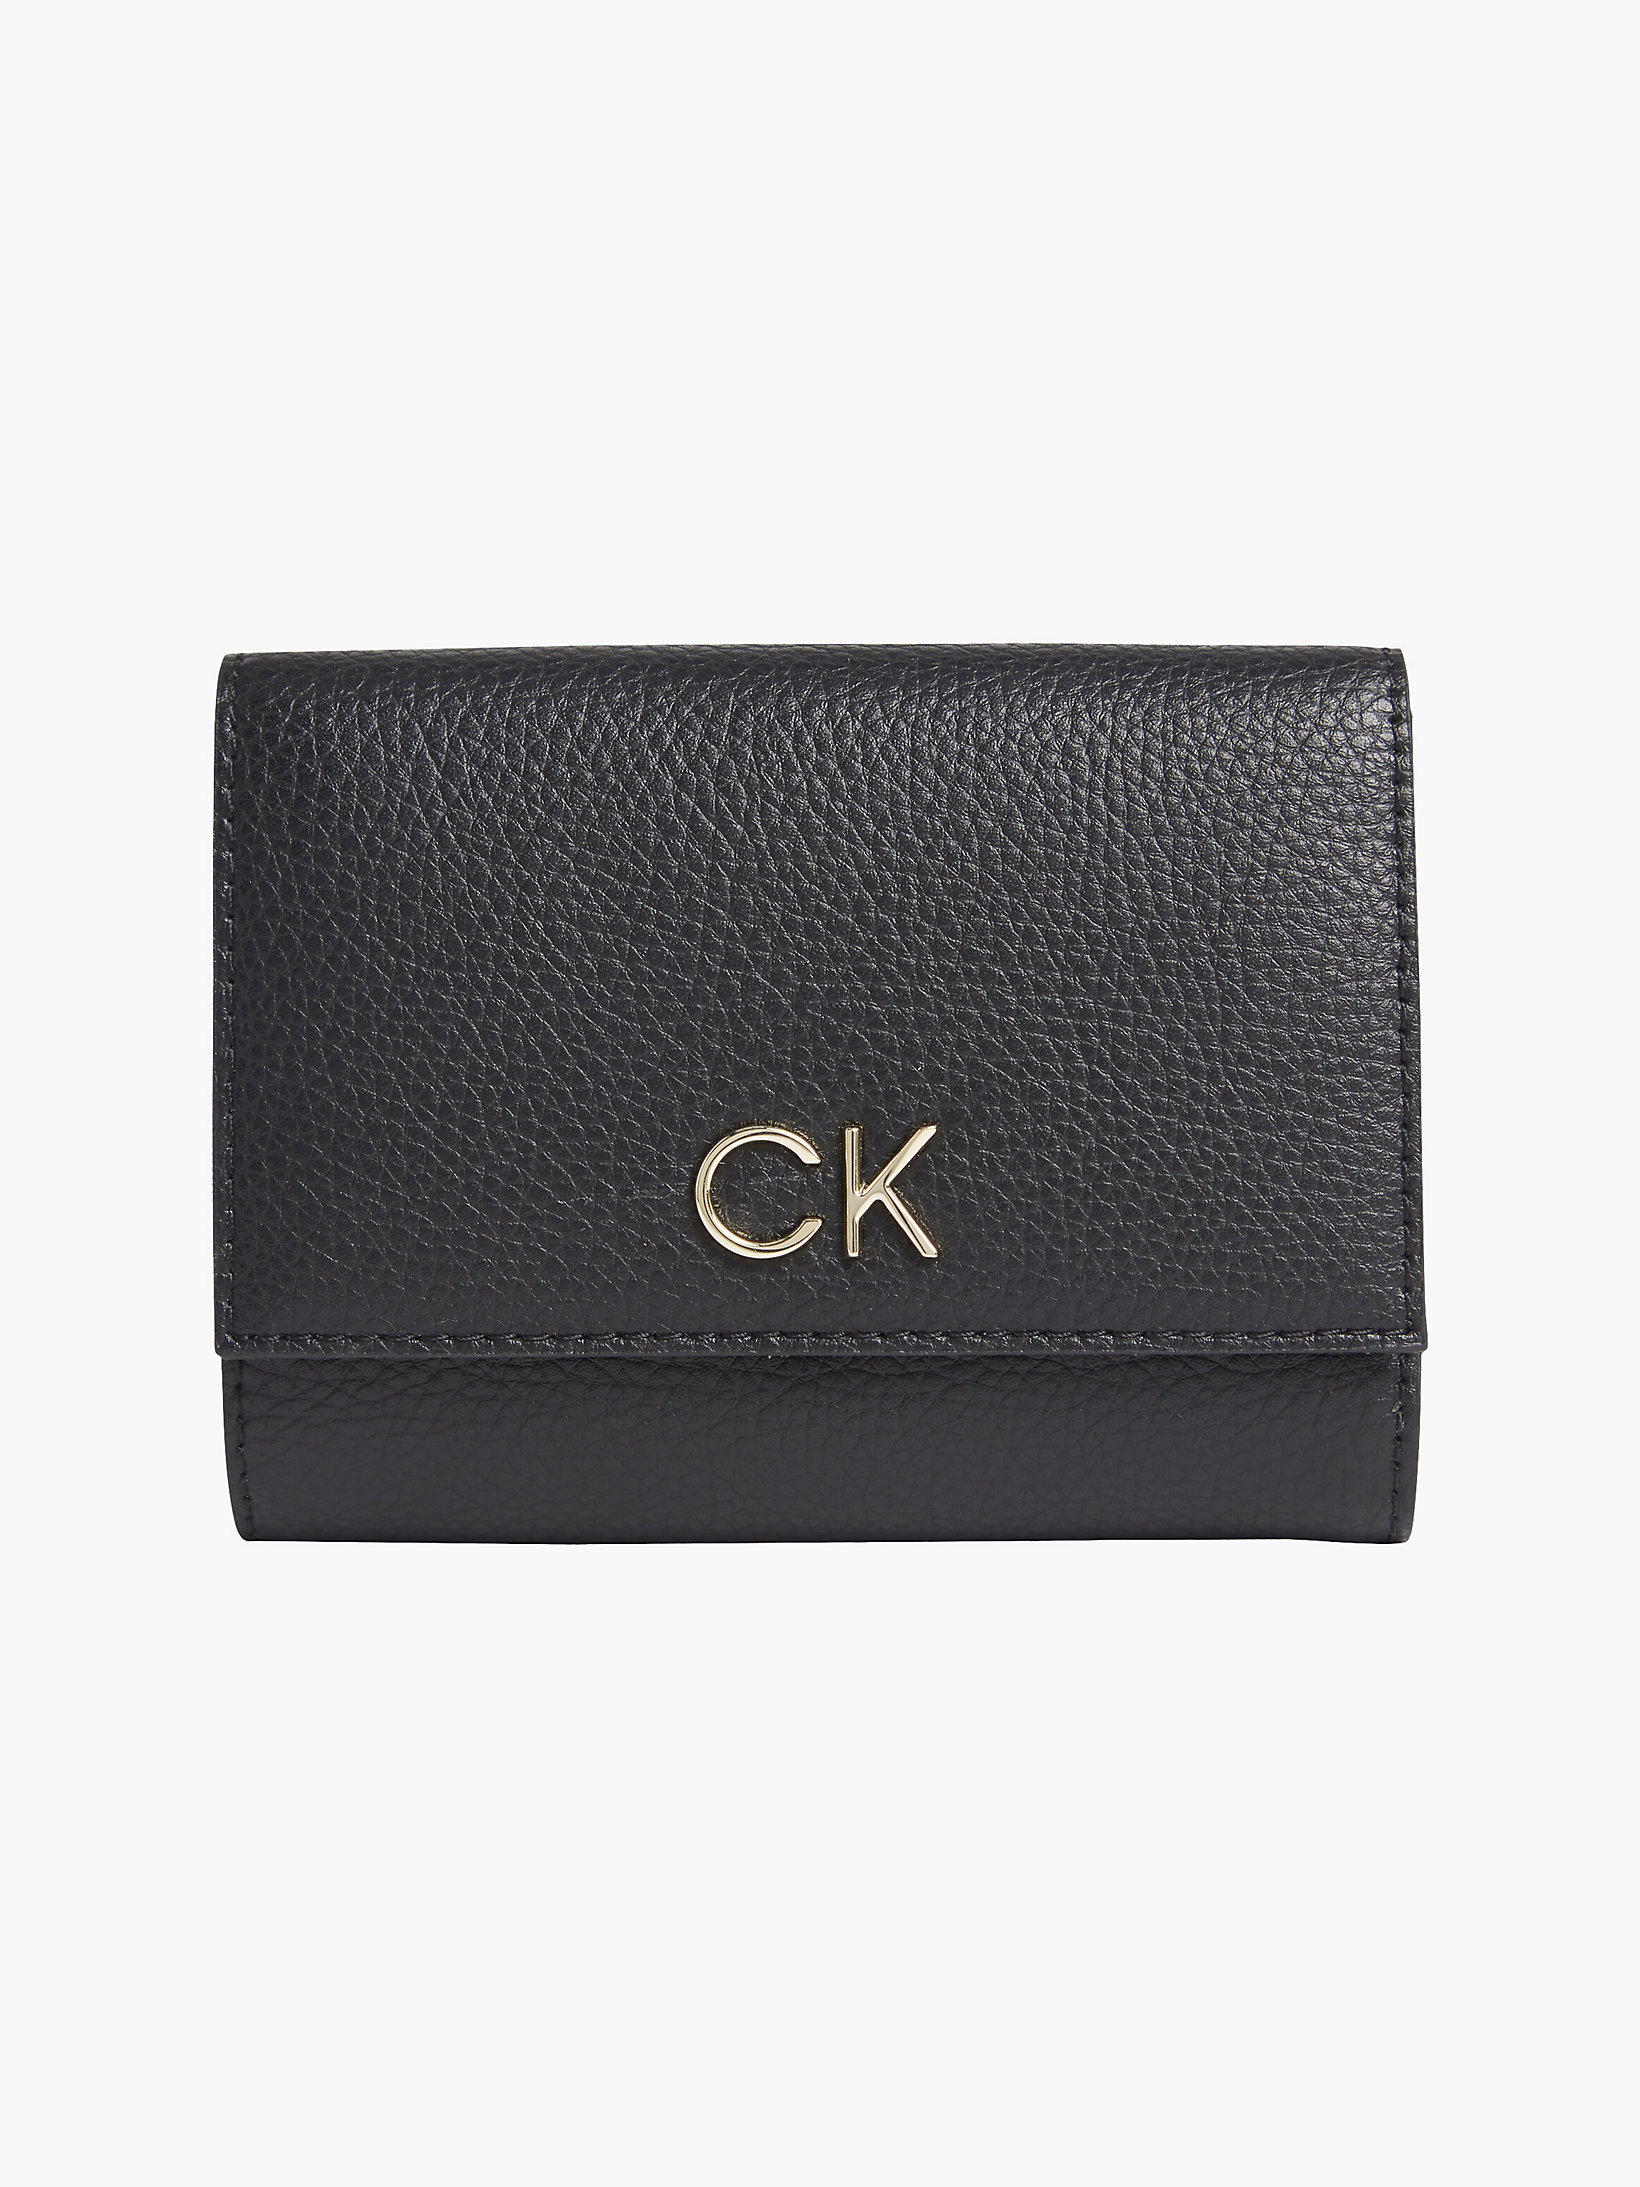 CK Black > Dreifach Faltbares Portemonnaie > undefined Damen - Calvin Klein